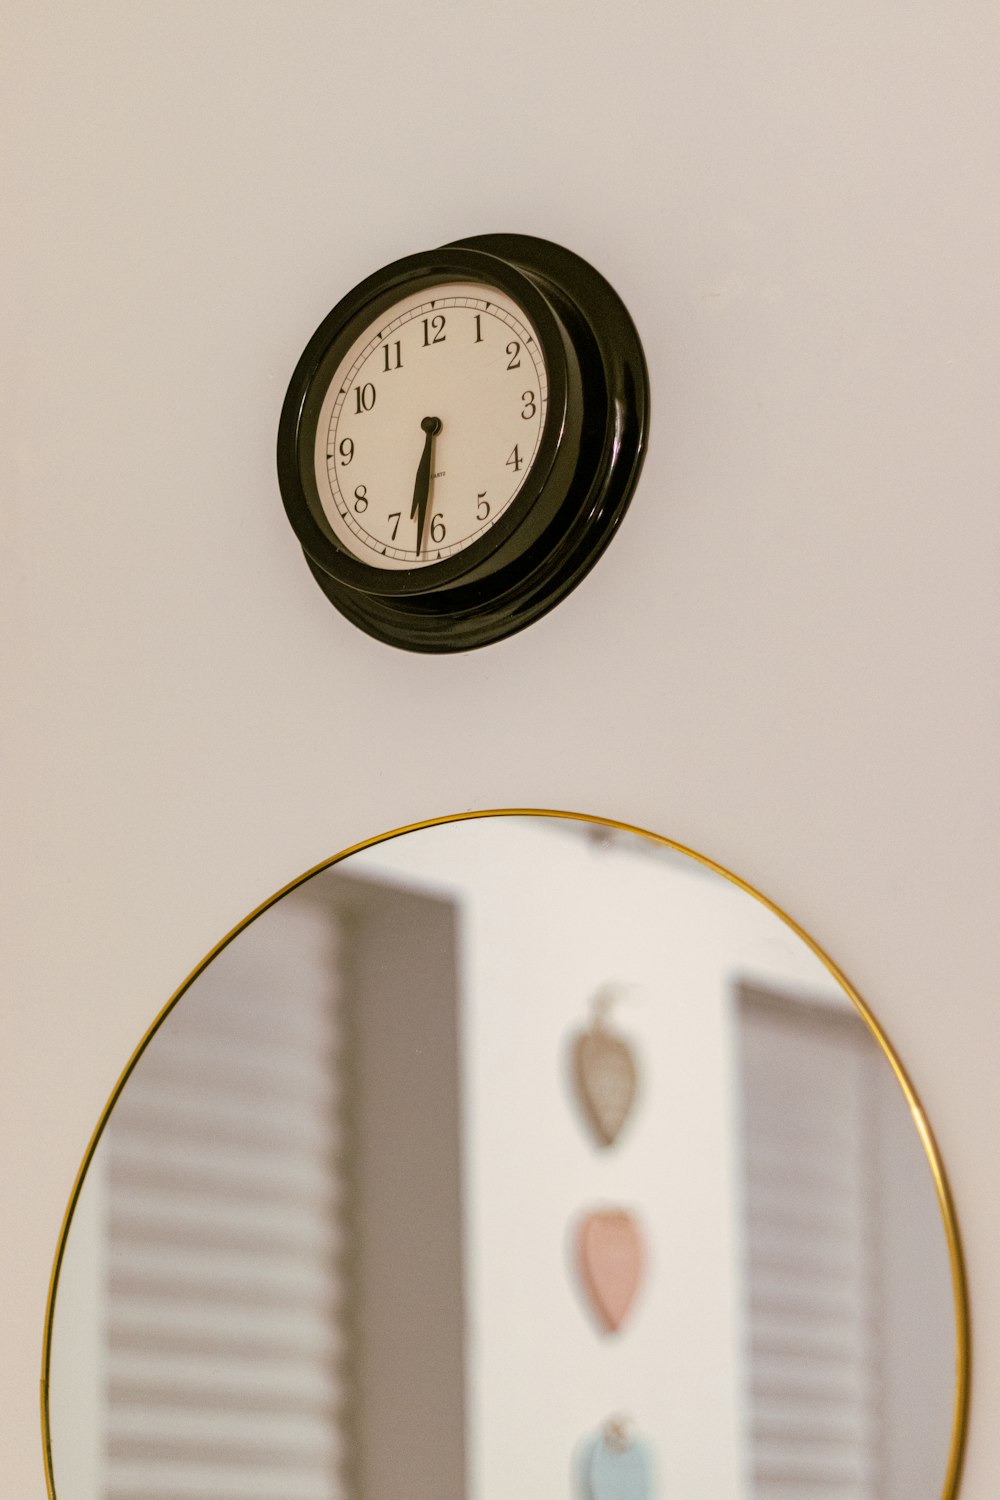 거울 위의 벽에 걸린 시계